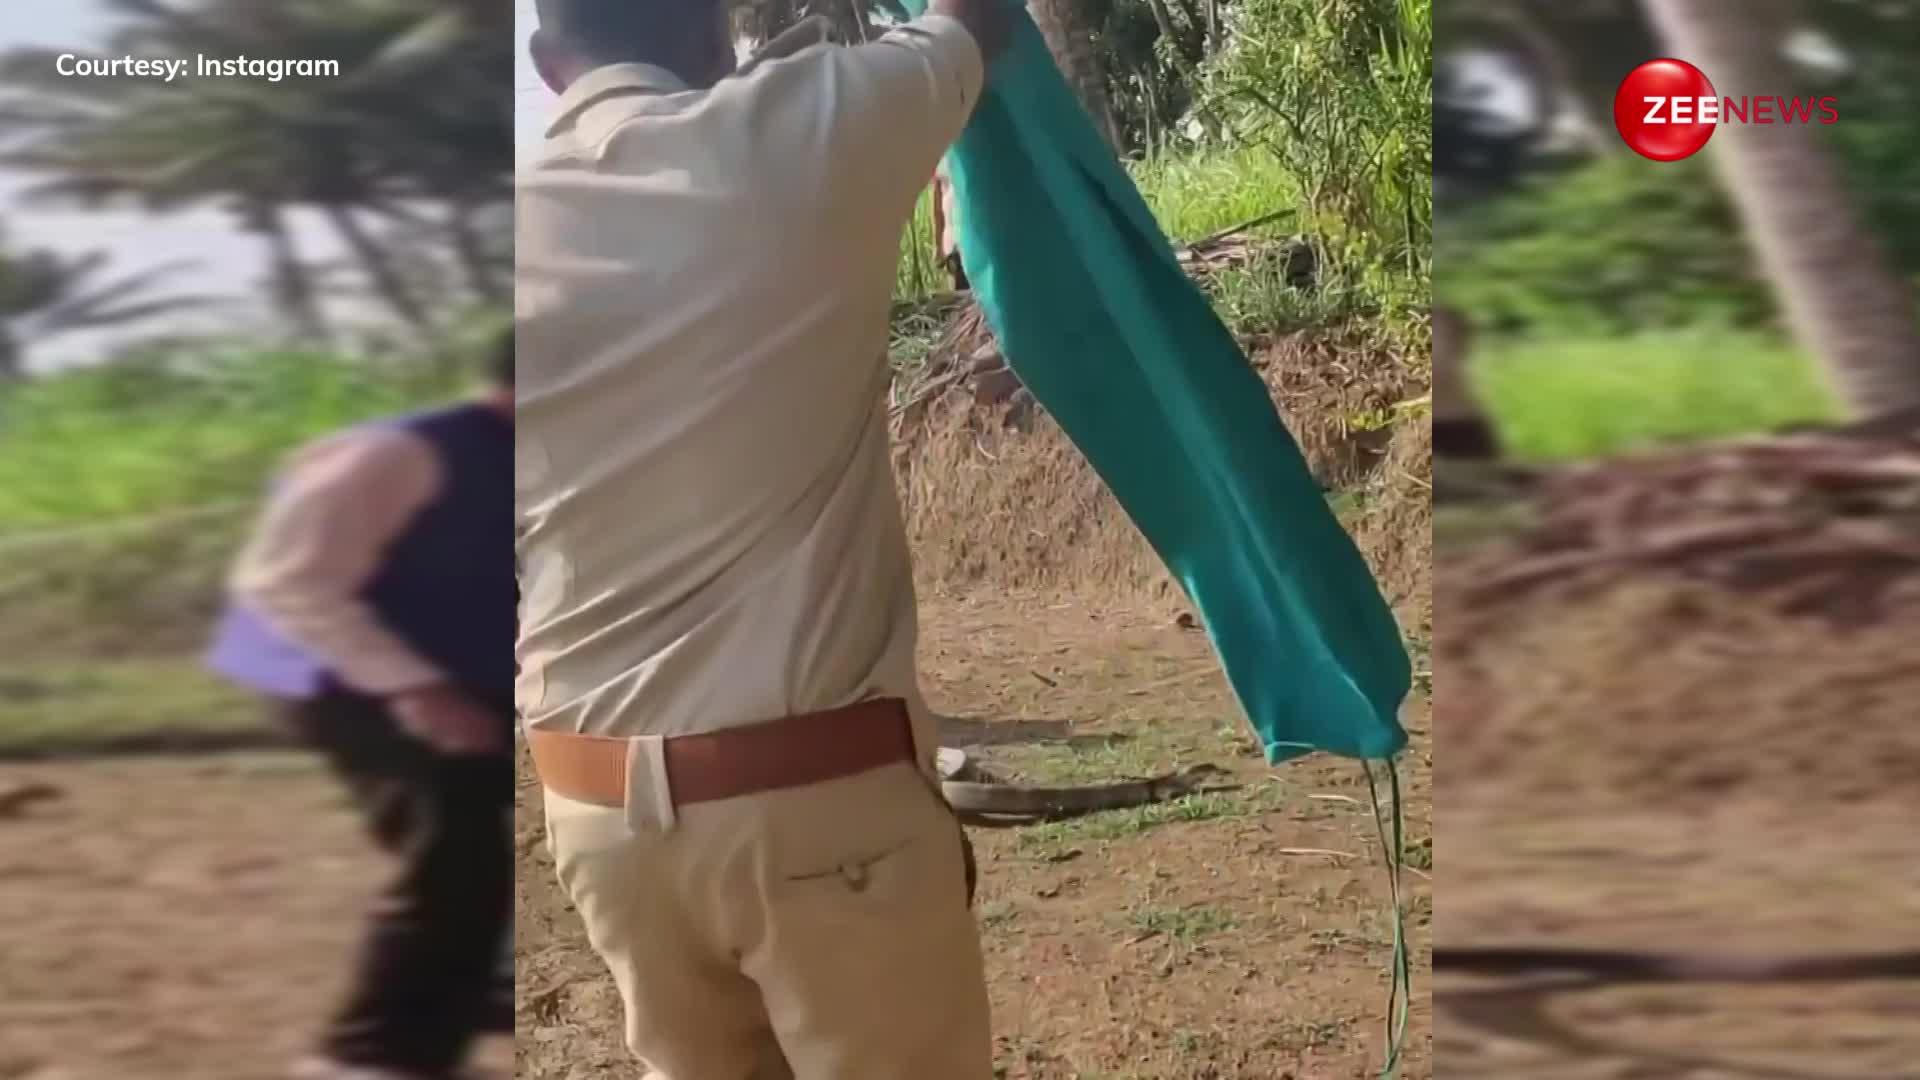 30 फुट के कोबरा को पकड़कर खींचने लगा, लोगों ने निकाला गुस्सा, कहा- जानवरों को परेशान करना बंद करो